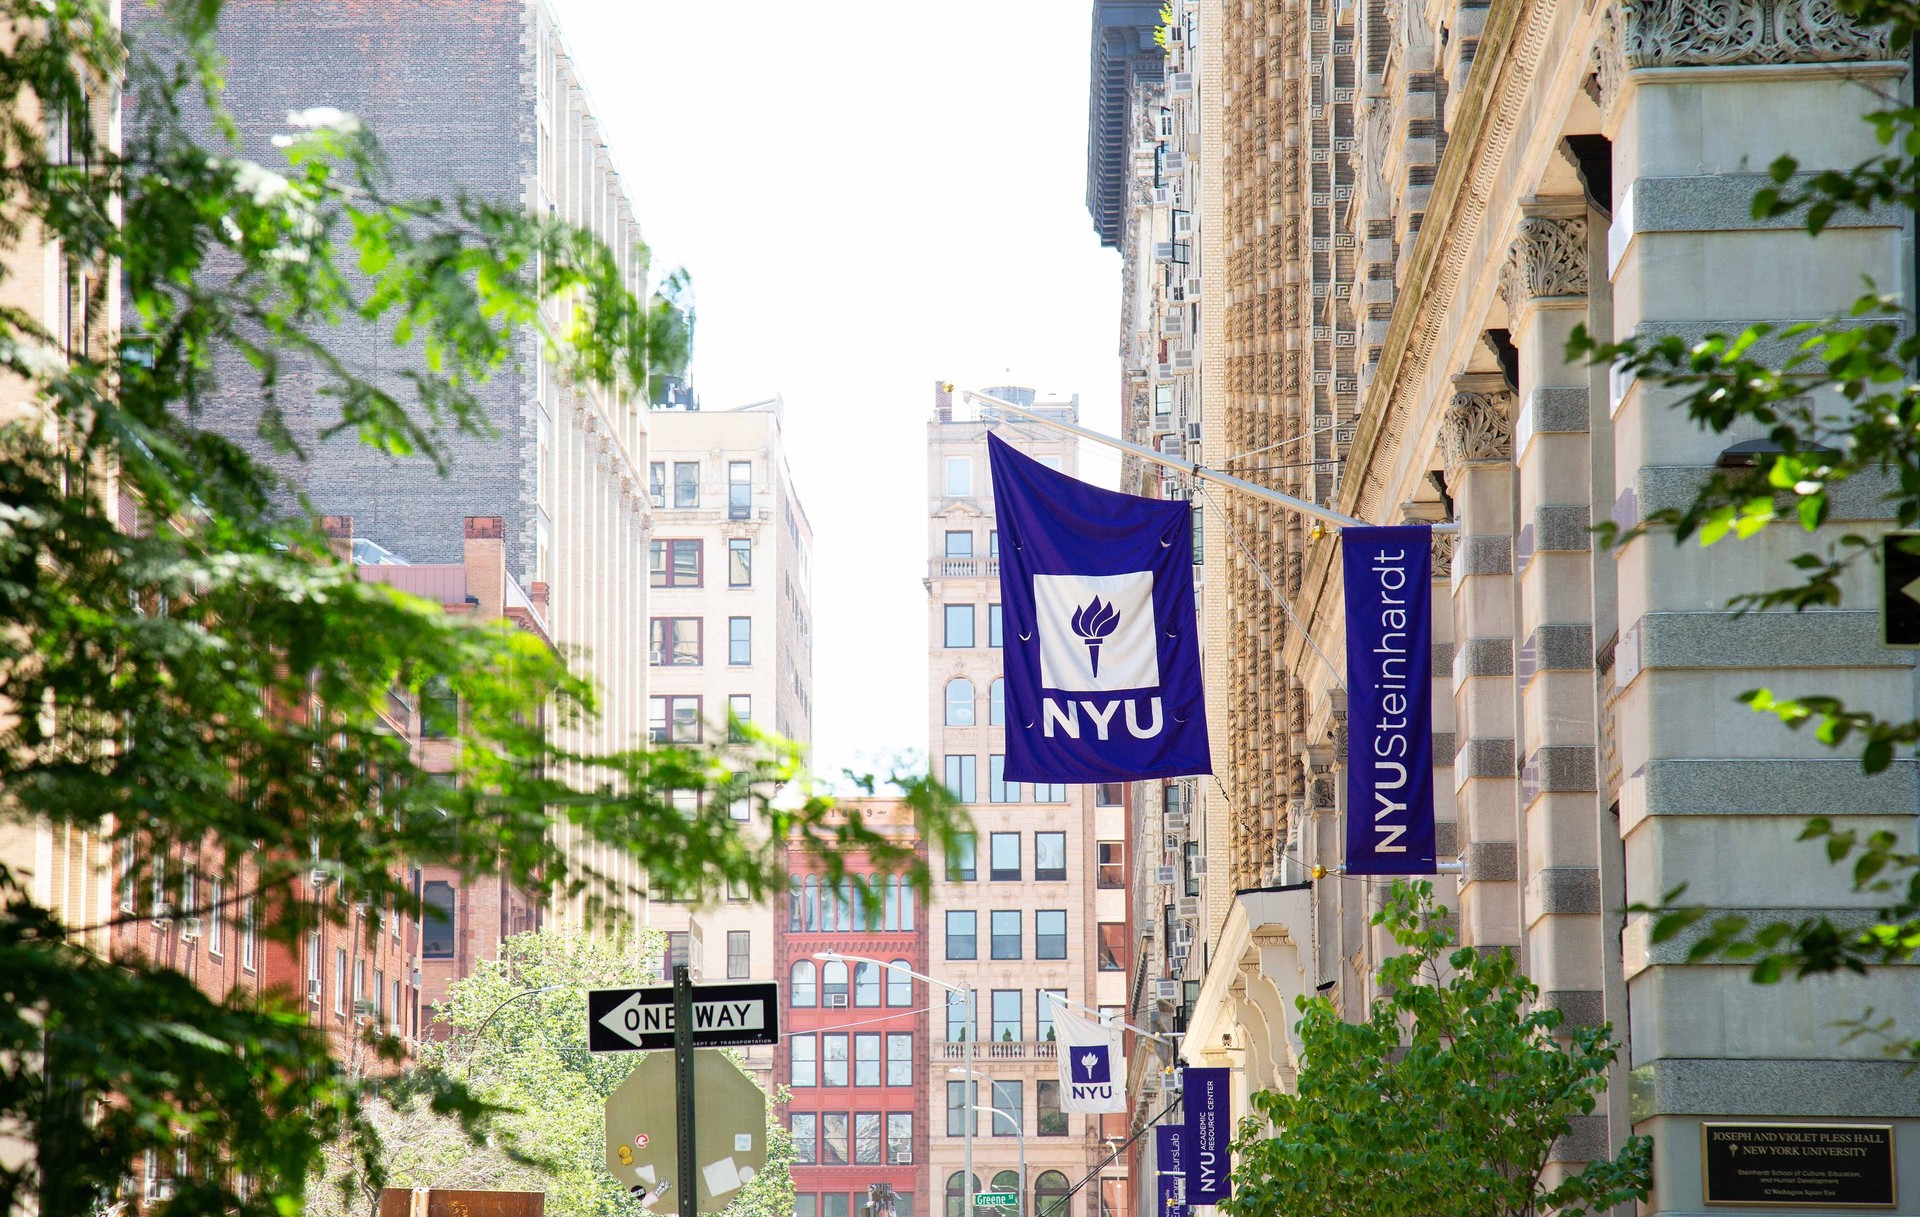 NYU Steinhardt campus flags hang over a sidewalk between campus buildings